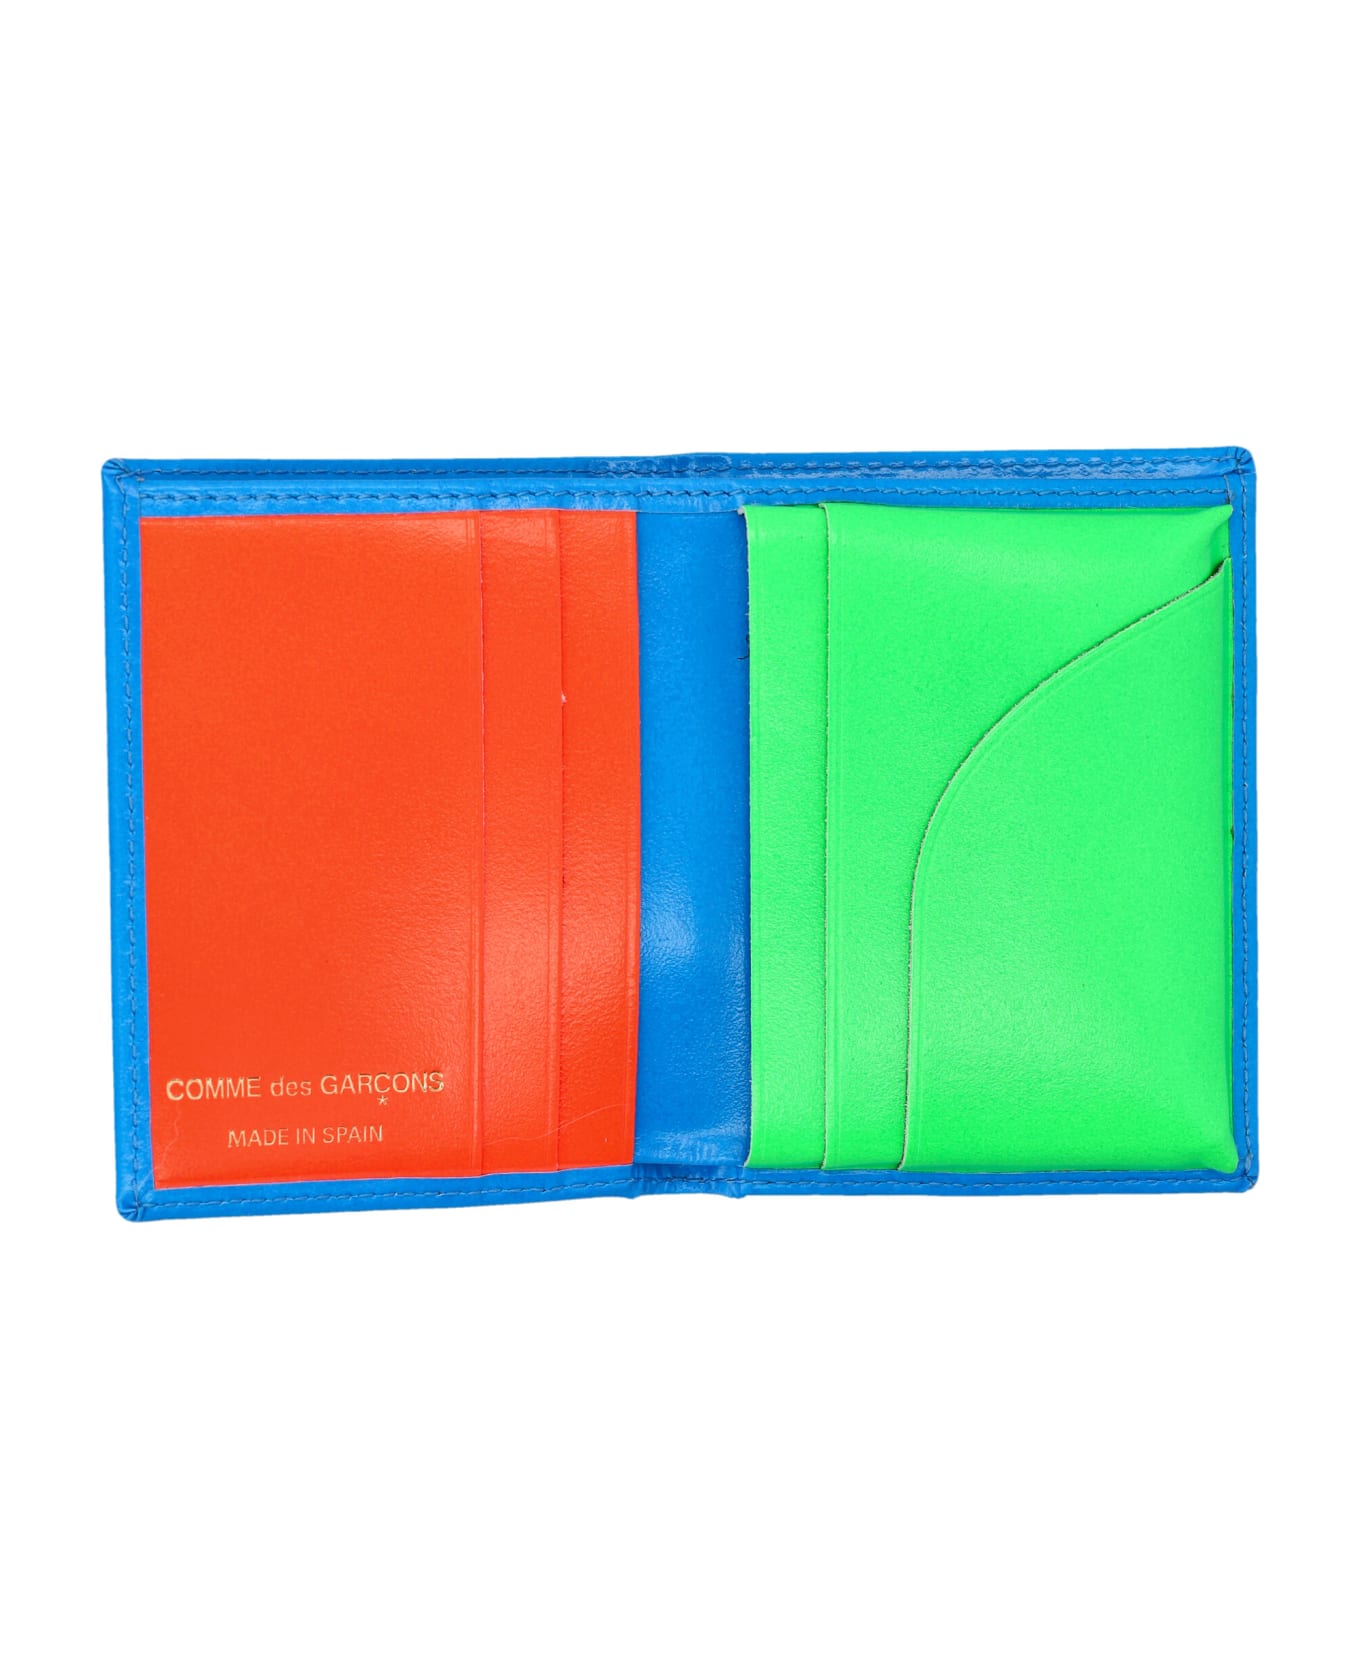 Comme des Garçons Wallet Super Fluo Cardholder - GREEN BLUE